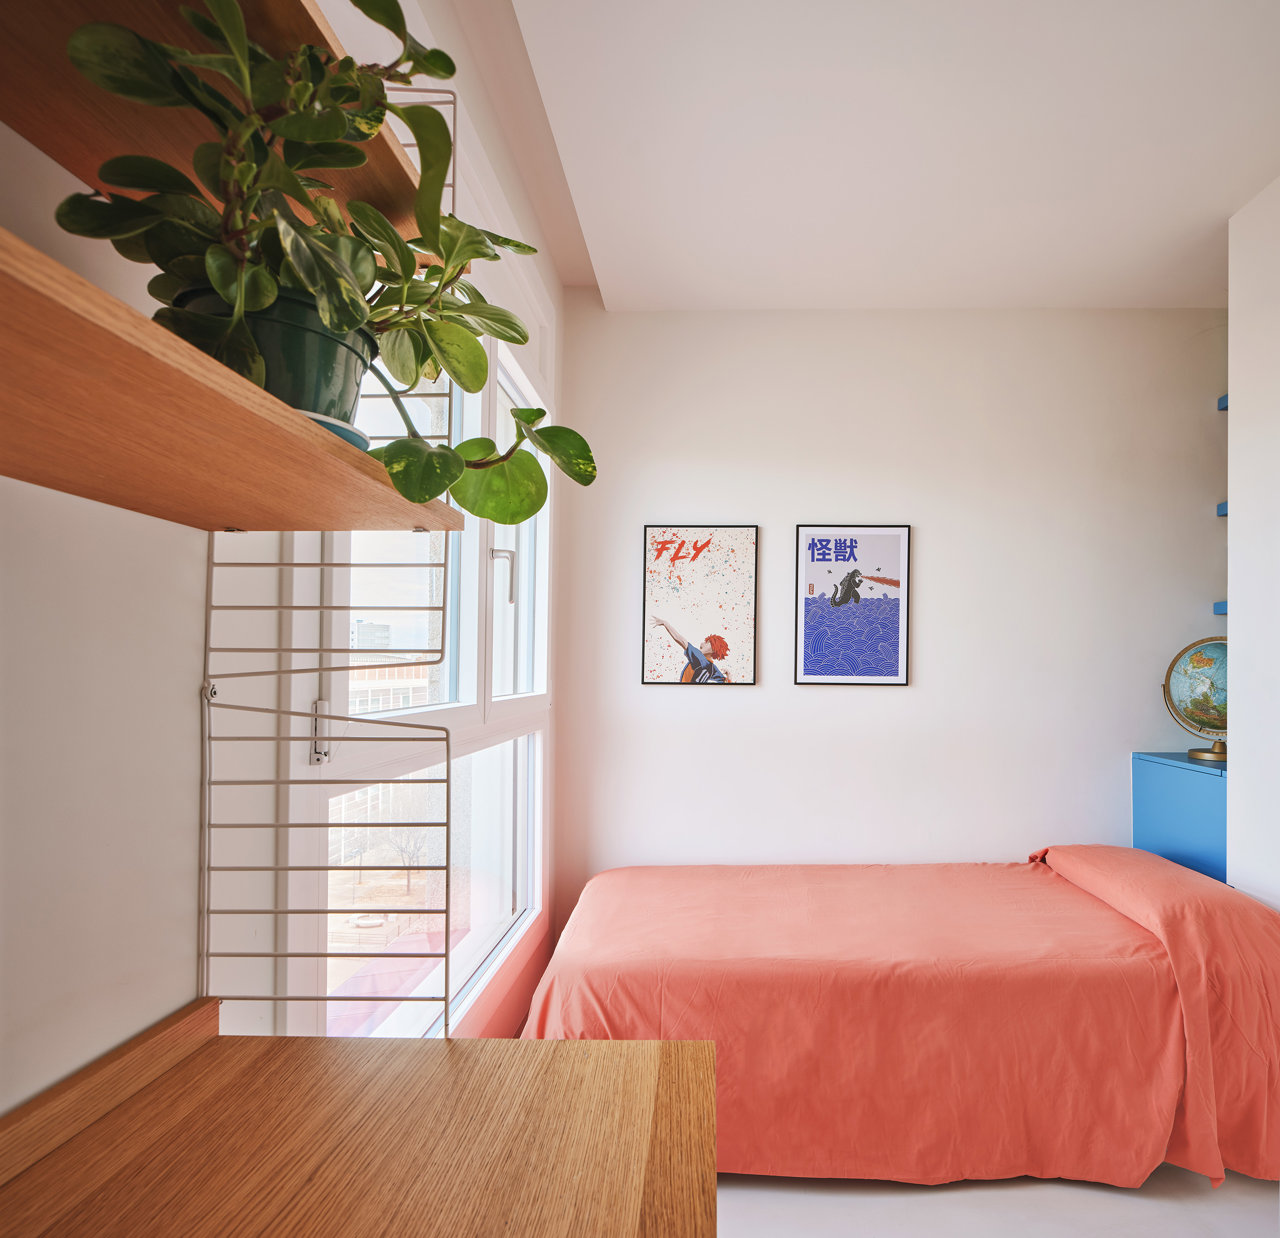 En las habitaciones infantiles, los colores se mezclaron con habilidad para crear entornos alegres y estimulantes.